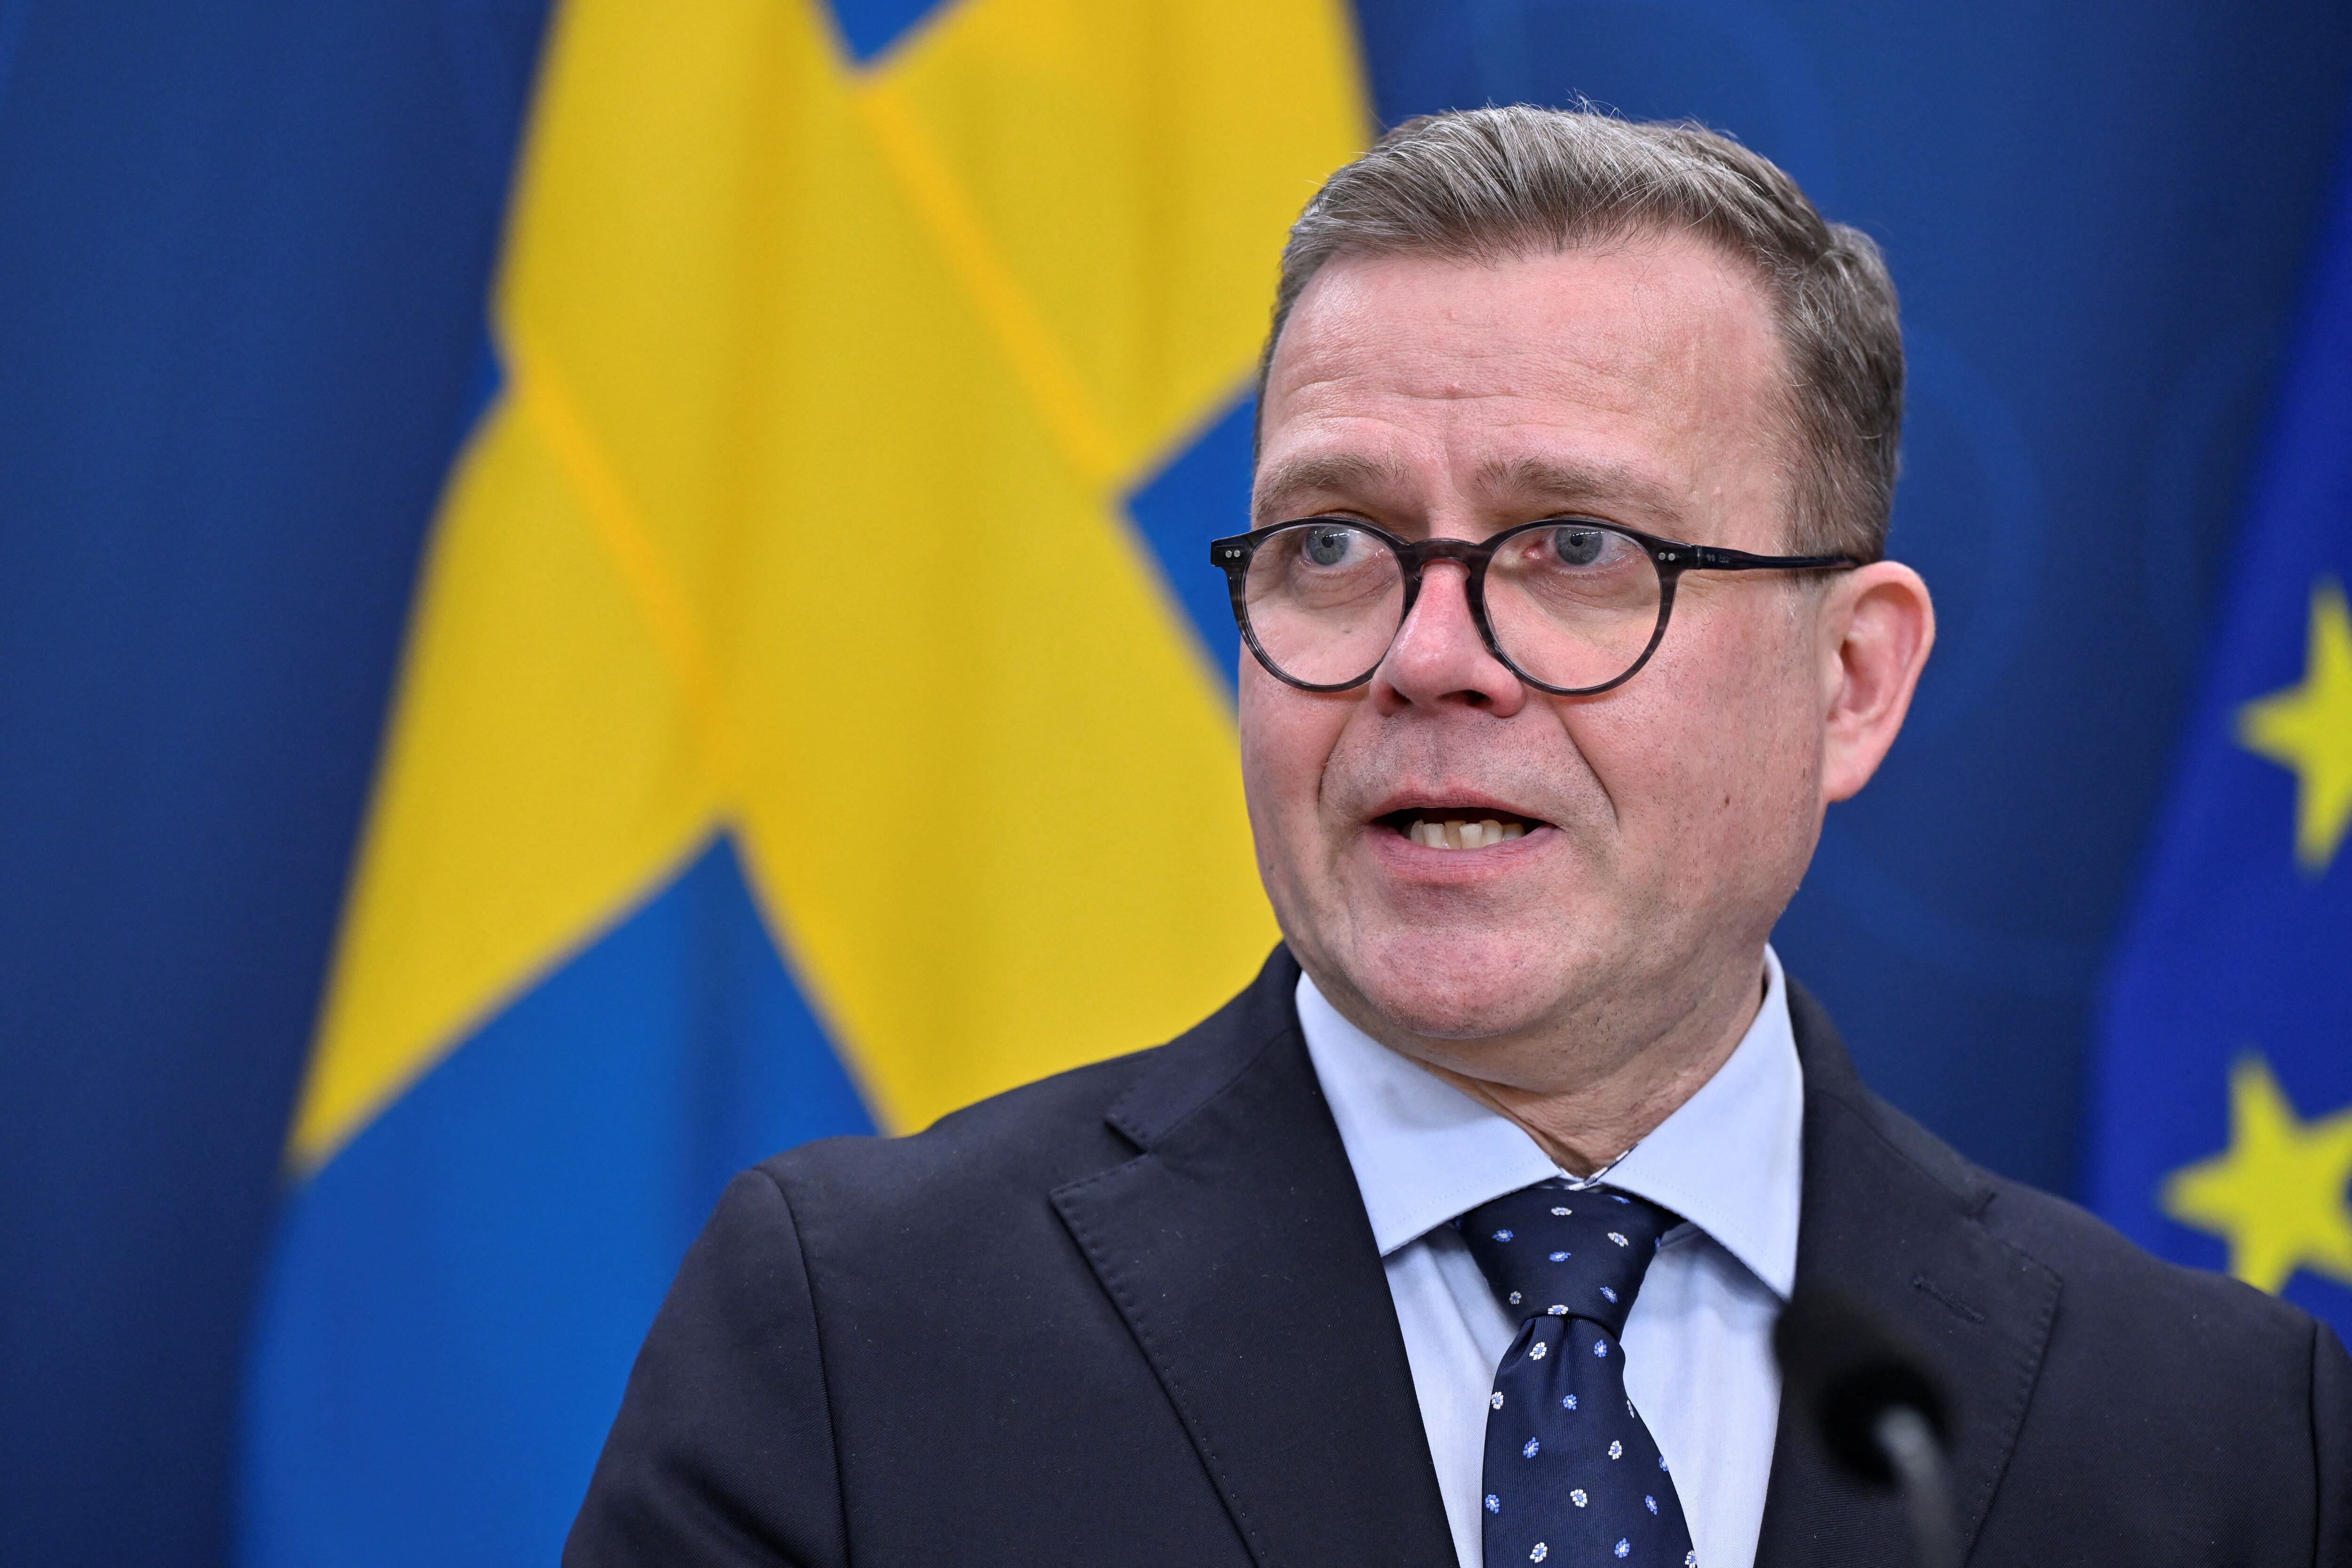 El primer ministro sueco, Ulf Kristersson, dijo que la decisión del Parlamento turco es “un paso más hacia la plena integración en la OTAN” (TT News Agency/Henrik Montgomery via REUTERS)